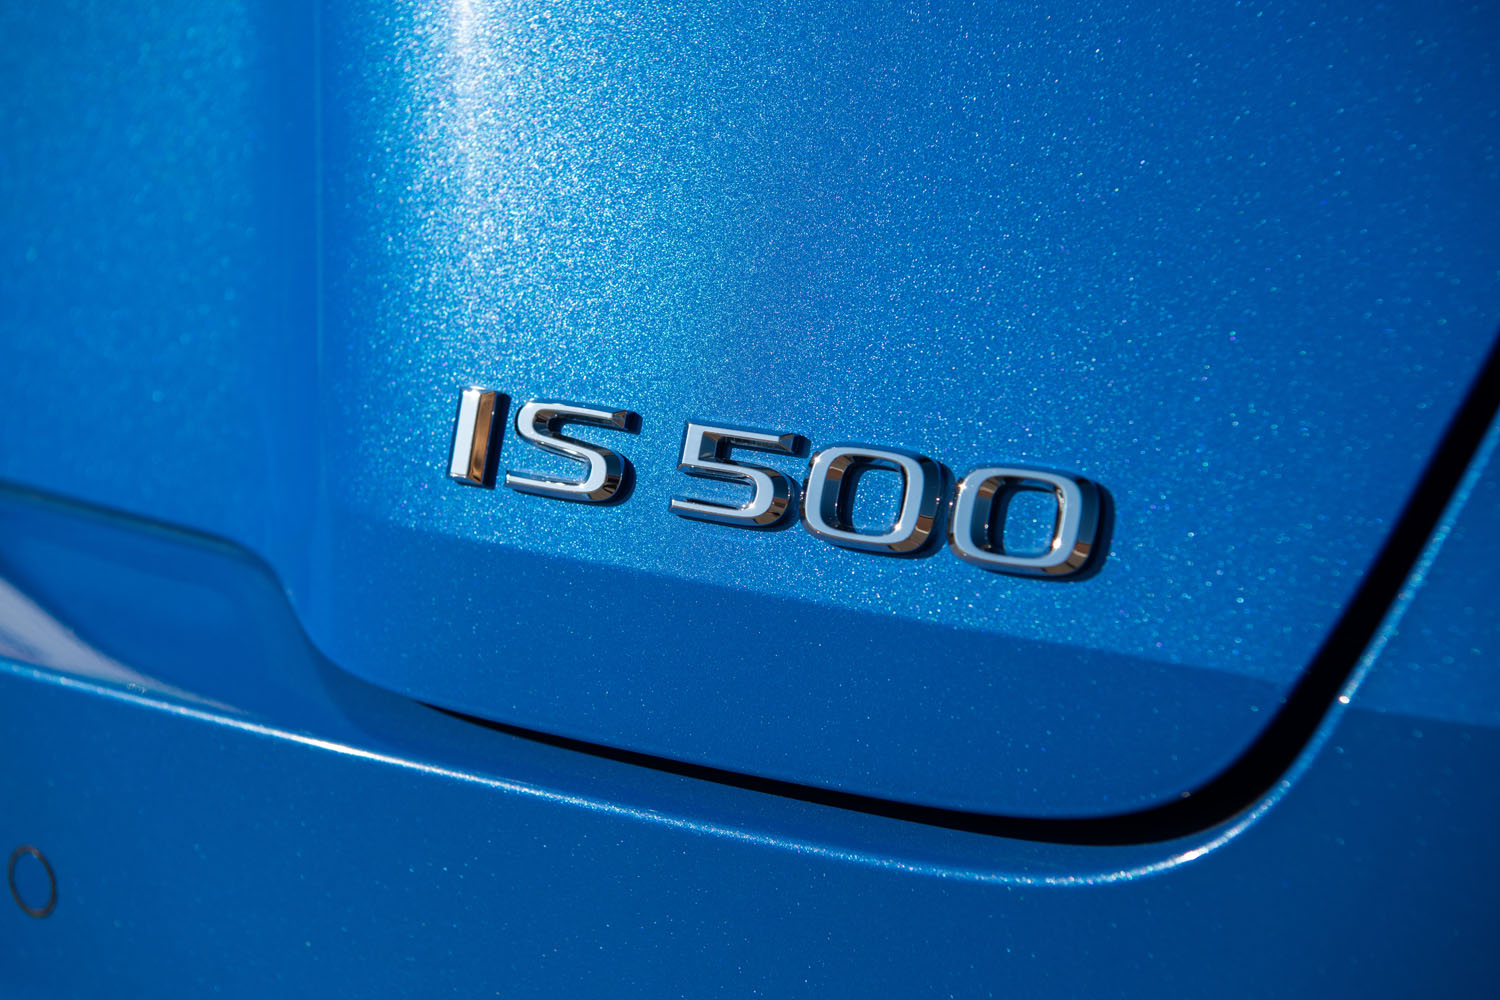 パワーユニット単体でみればかつての「IS F」と同等に思える新型だが、「IS500」という異なる車名が与えられている。